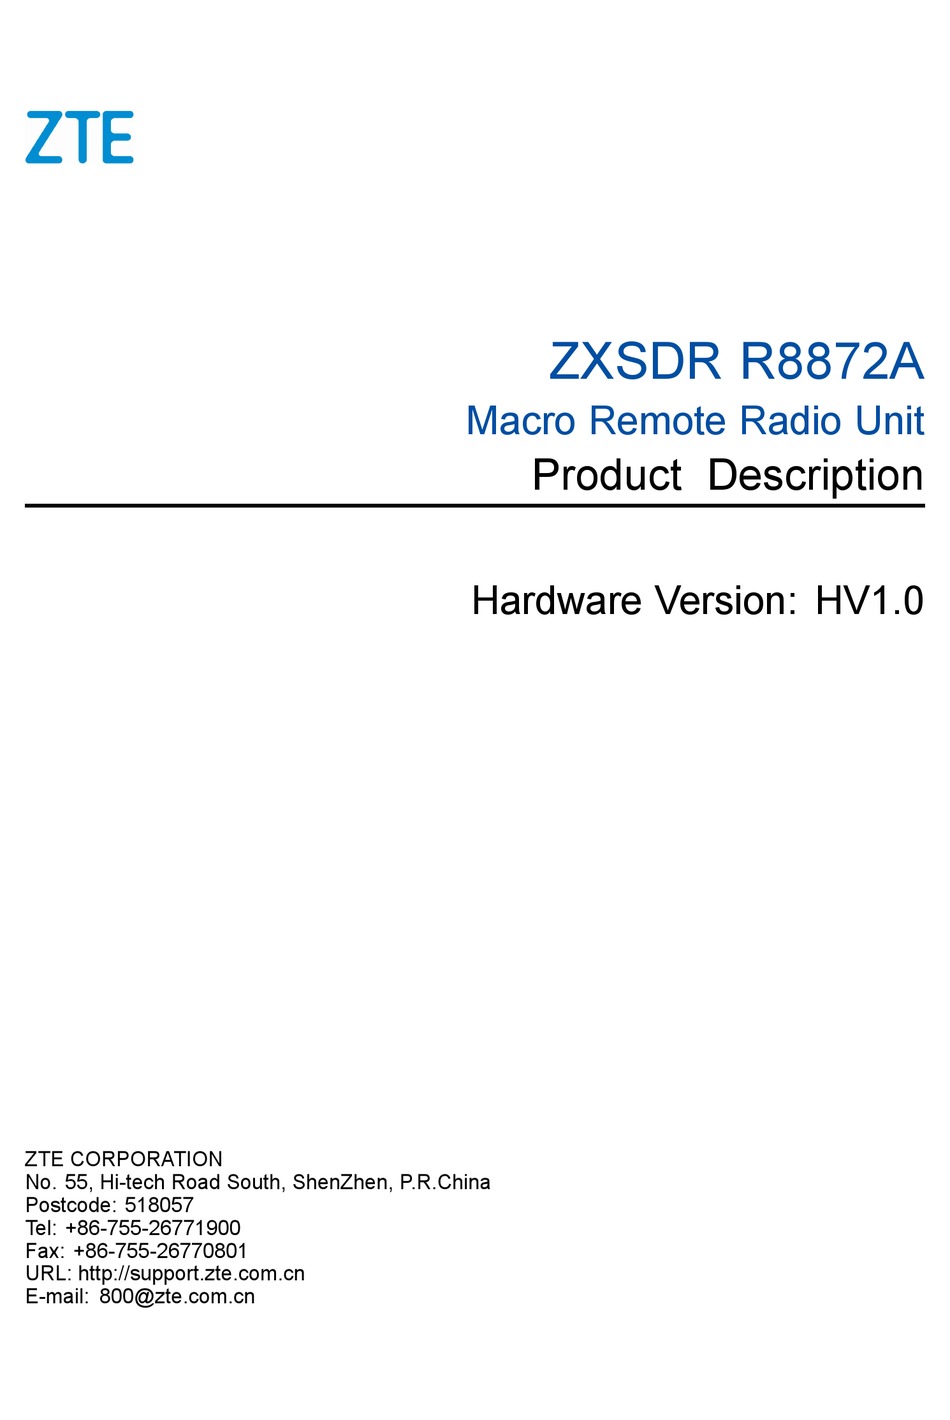 ZTE ZXSDR R8872A PRODUCT DESCRIPTION Pdf Download | ManualsLib